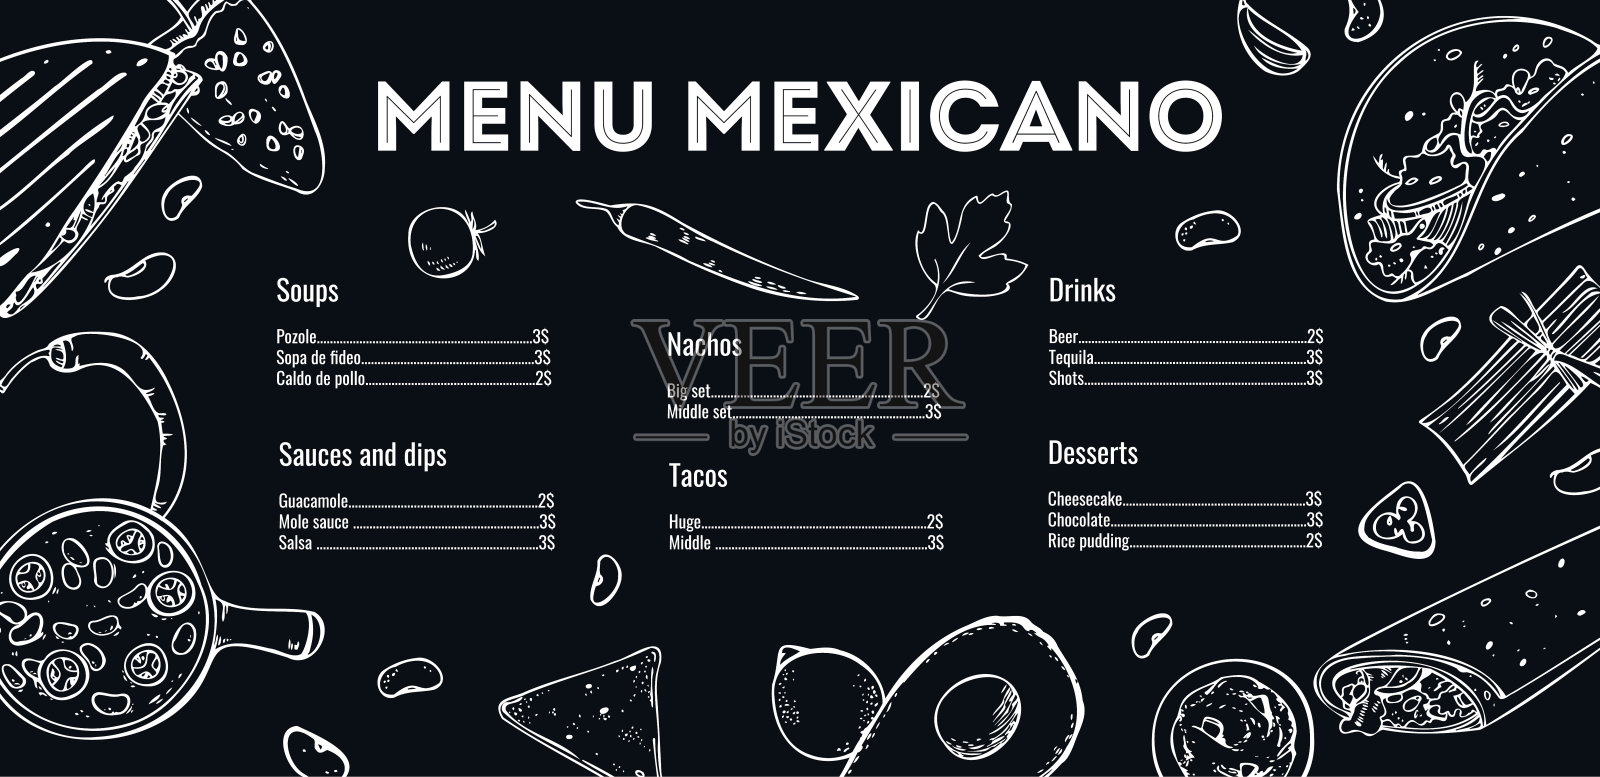 菜单墨西哥设计模板。菜肴列表和大纲插图。手绘矢量草图图形。白底黑字设计模板素材